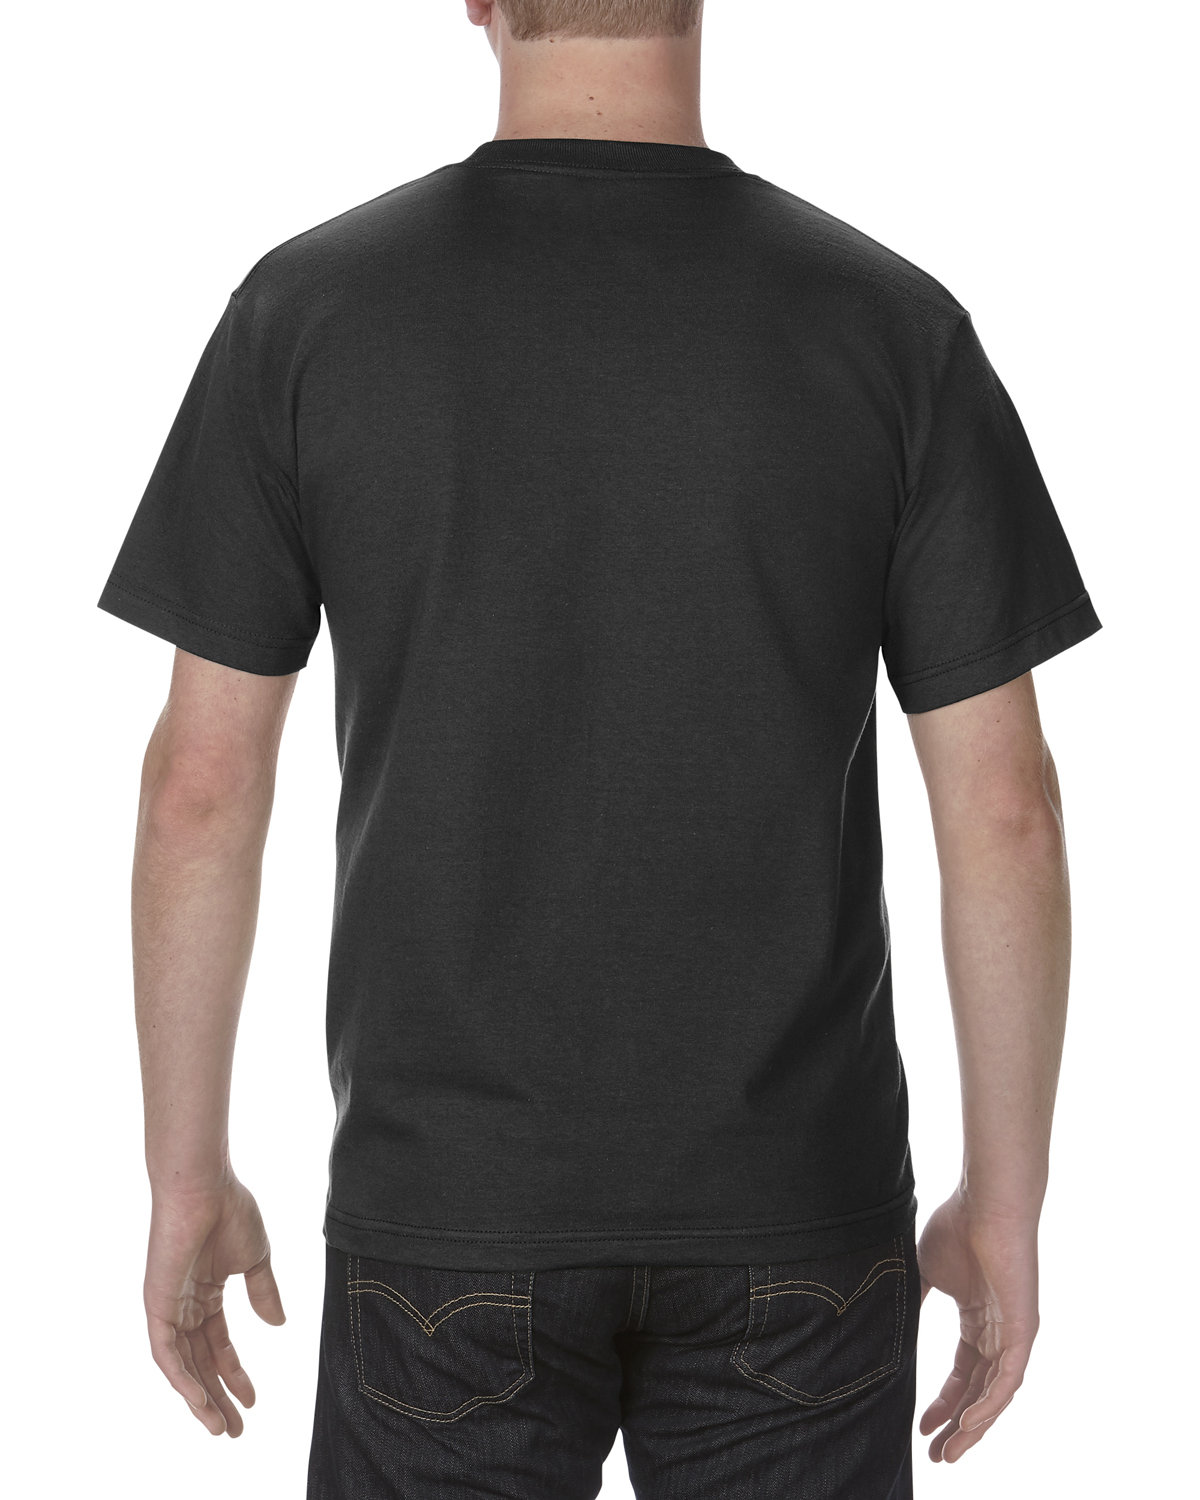 American Apparel Unisex Heavyweight Cotton T-Shirt | alphabroder